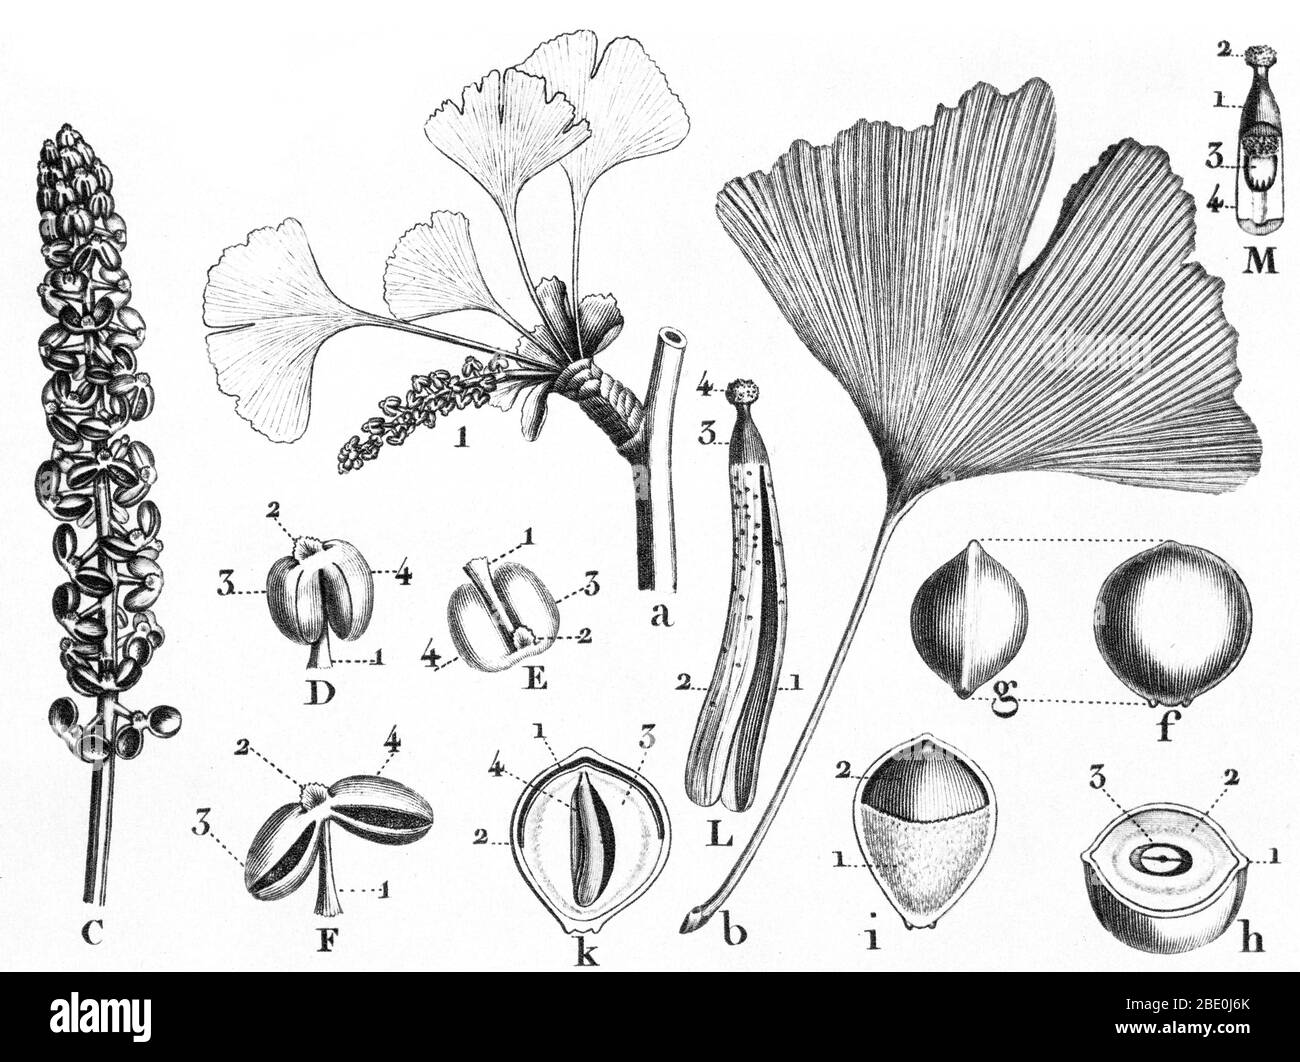 Il Ginkgo biloba da Louis Marie Claude Richard (Settembre 17. 1754 - Giugno 6, 1821) un botanico francese e illustratore botanico. Il Ginkgo è un genere di estremamente insolito non-piante fiorite. Il nome scientifico è usato anche come il nome inglese. Il fine a cui essa appartiene, Ginkgoales, apparve per la prima volta del Permiano, 270 milioni di anni fa, forse deriva da "sementi di felci" dell'ordine Peltaspermales. Il tasso di evoluzione all'interno del genere è stata lenta e quasi tutte le sue specie era diventato estinti entro la fine del pliocene; la sola eccezione è il sole specie viventi, Ginkgo biloba, che è solo fou Foto Stock